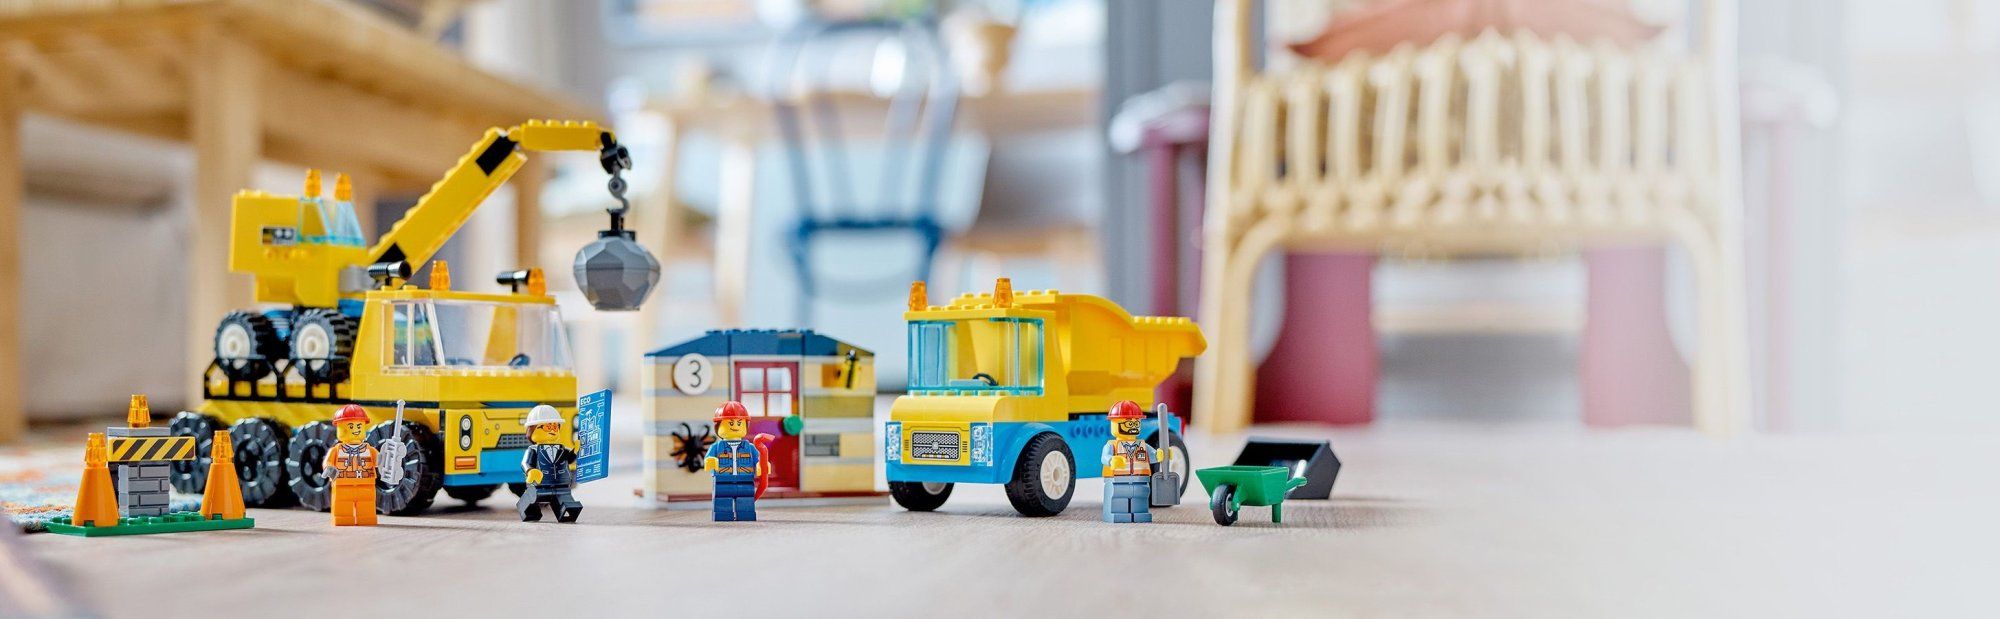 LEGO City 60391 Stavebná dodávka a demolačný žeriav